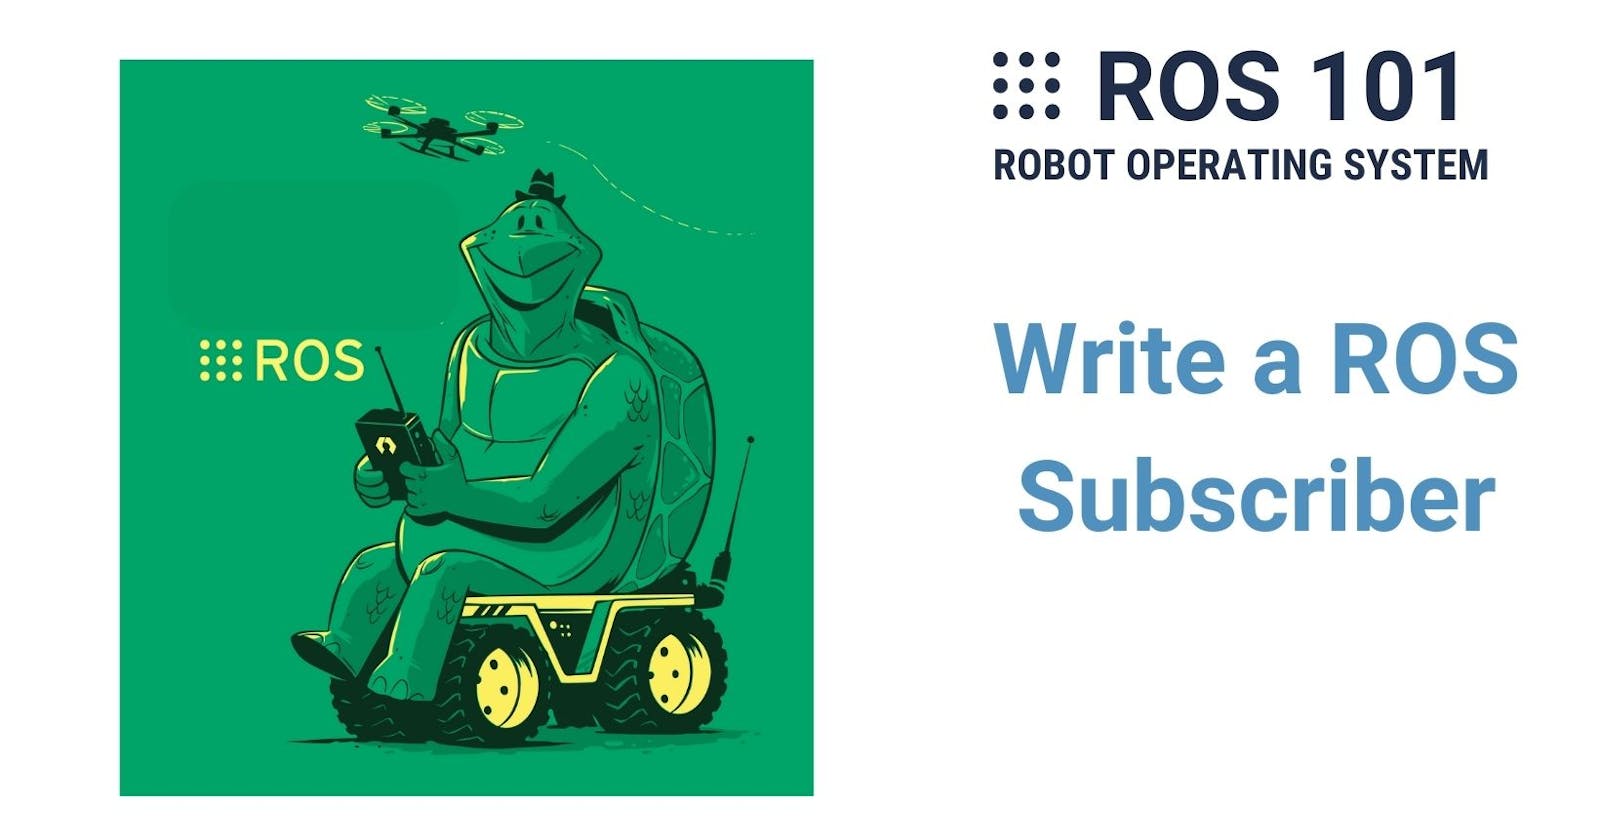 8. Write a ROS Subscriber